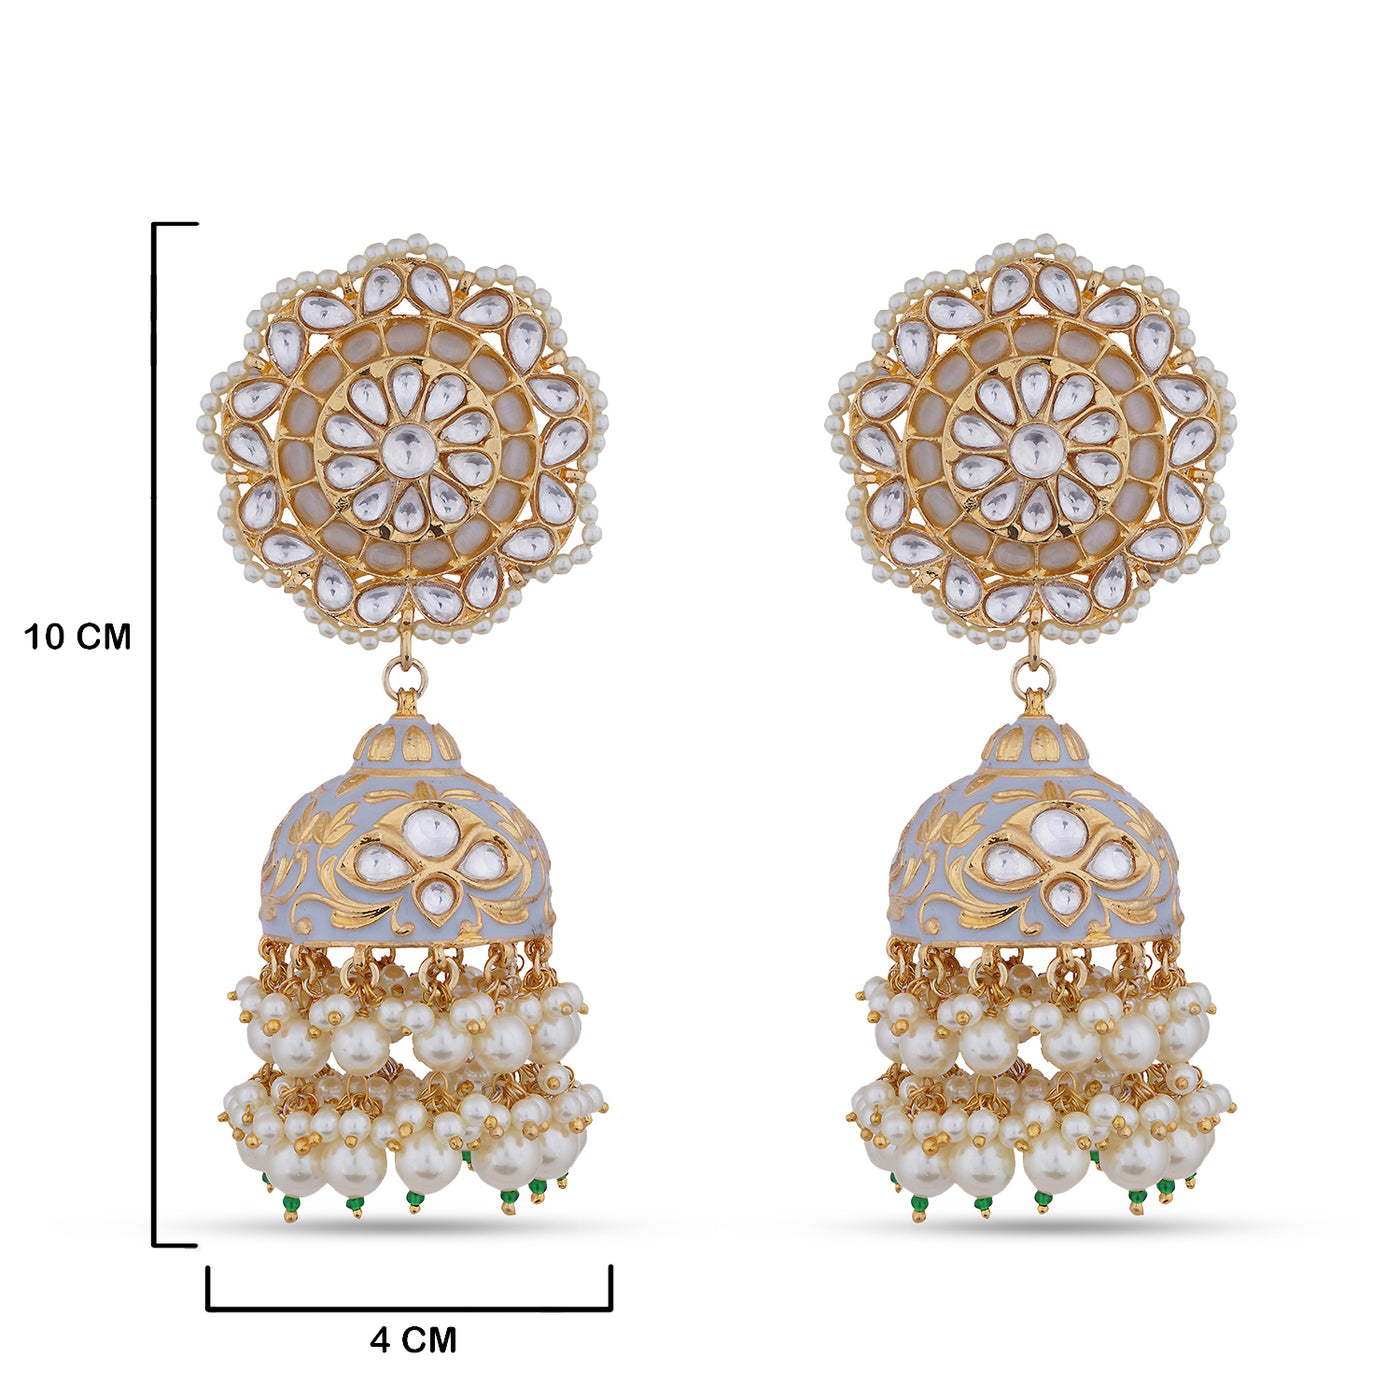 Pearled Jhumki Kundan Earrings with measurements in cm. 10cm by 4cm.